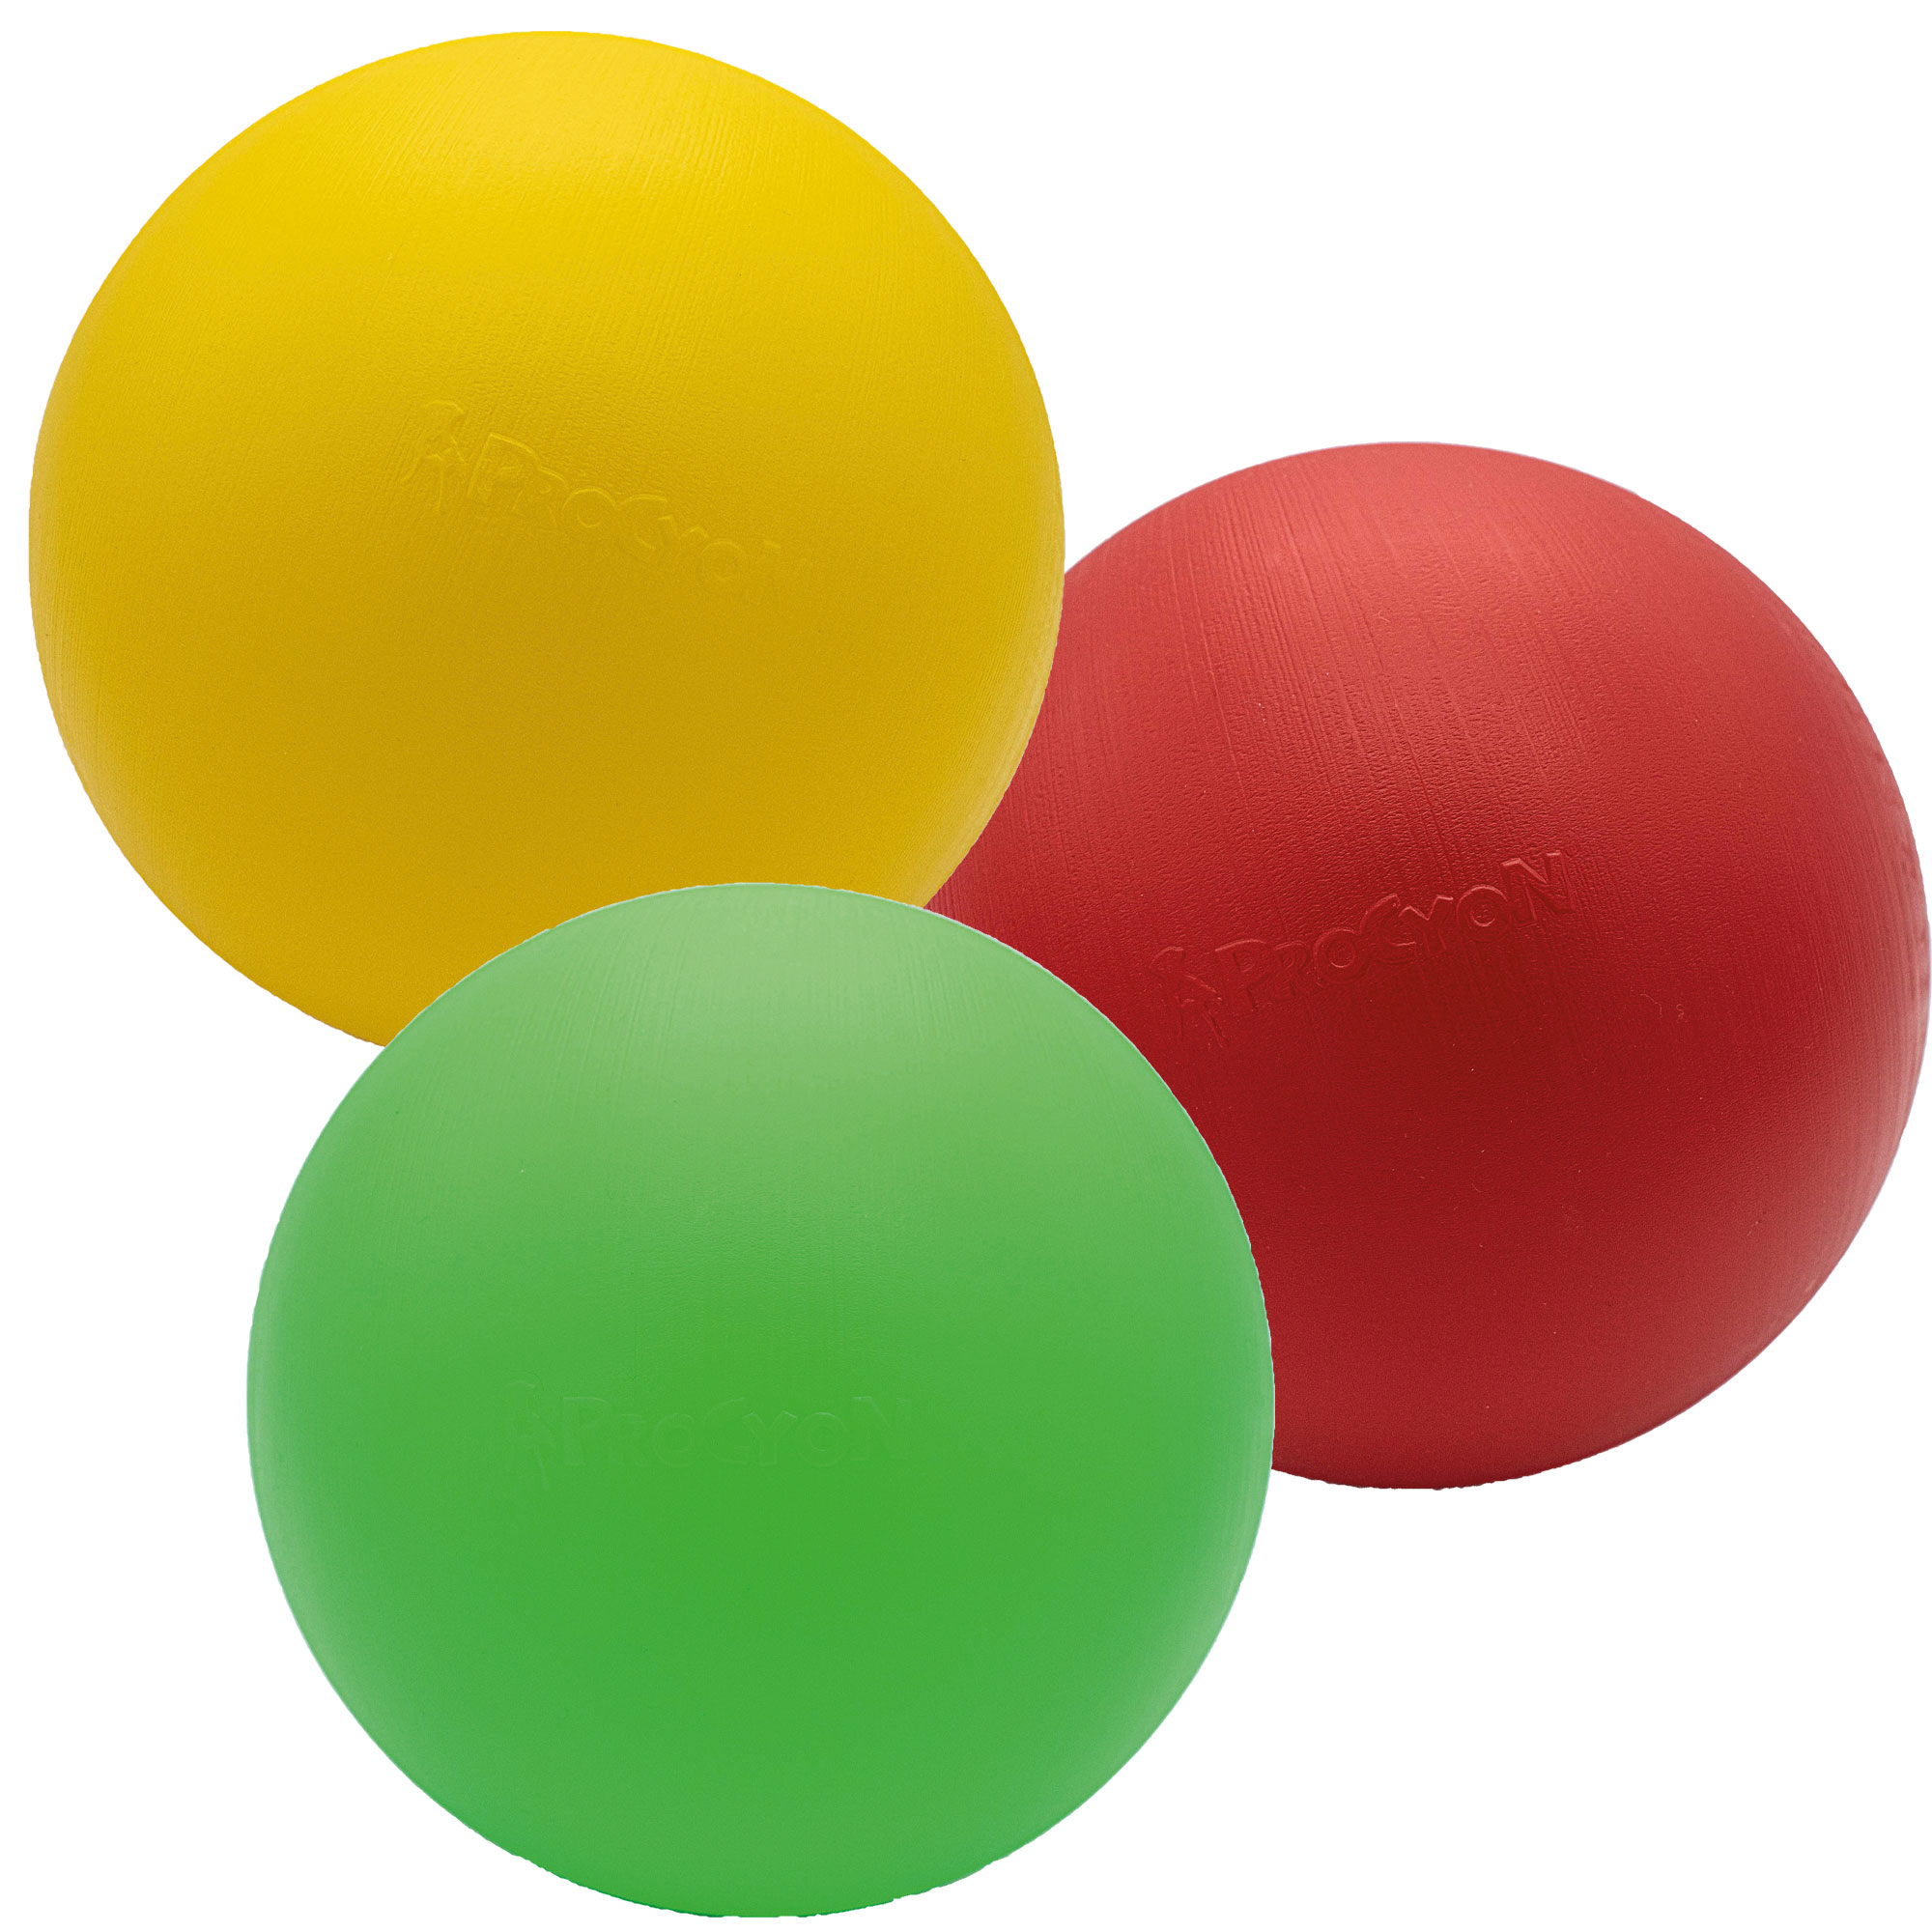 Robuster Treibball aus Kunststoff idealer Ball zur Beschäftigung für